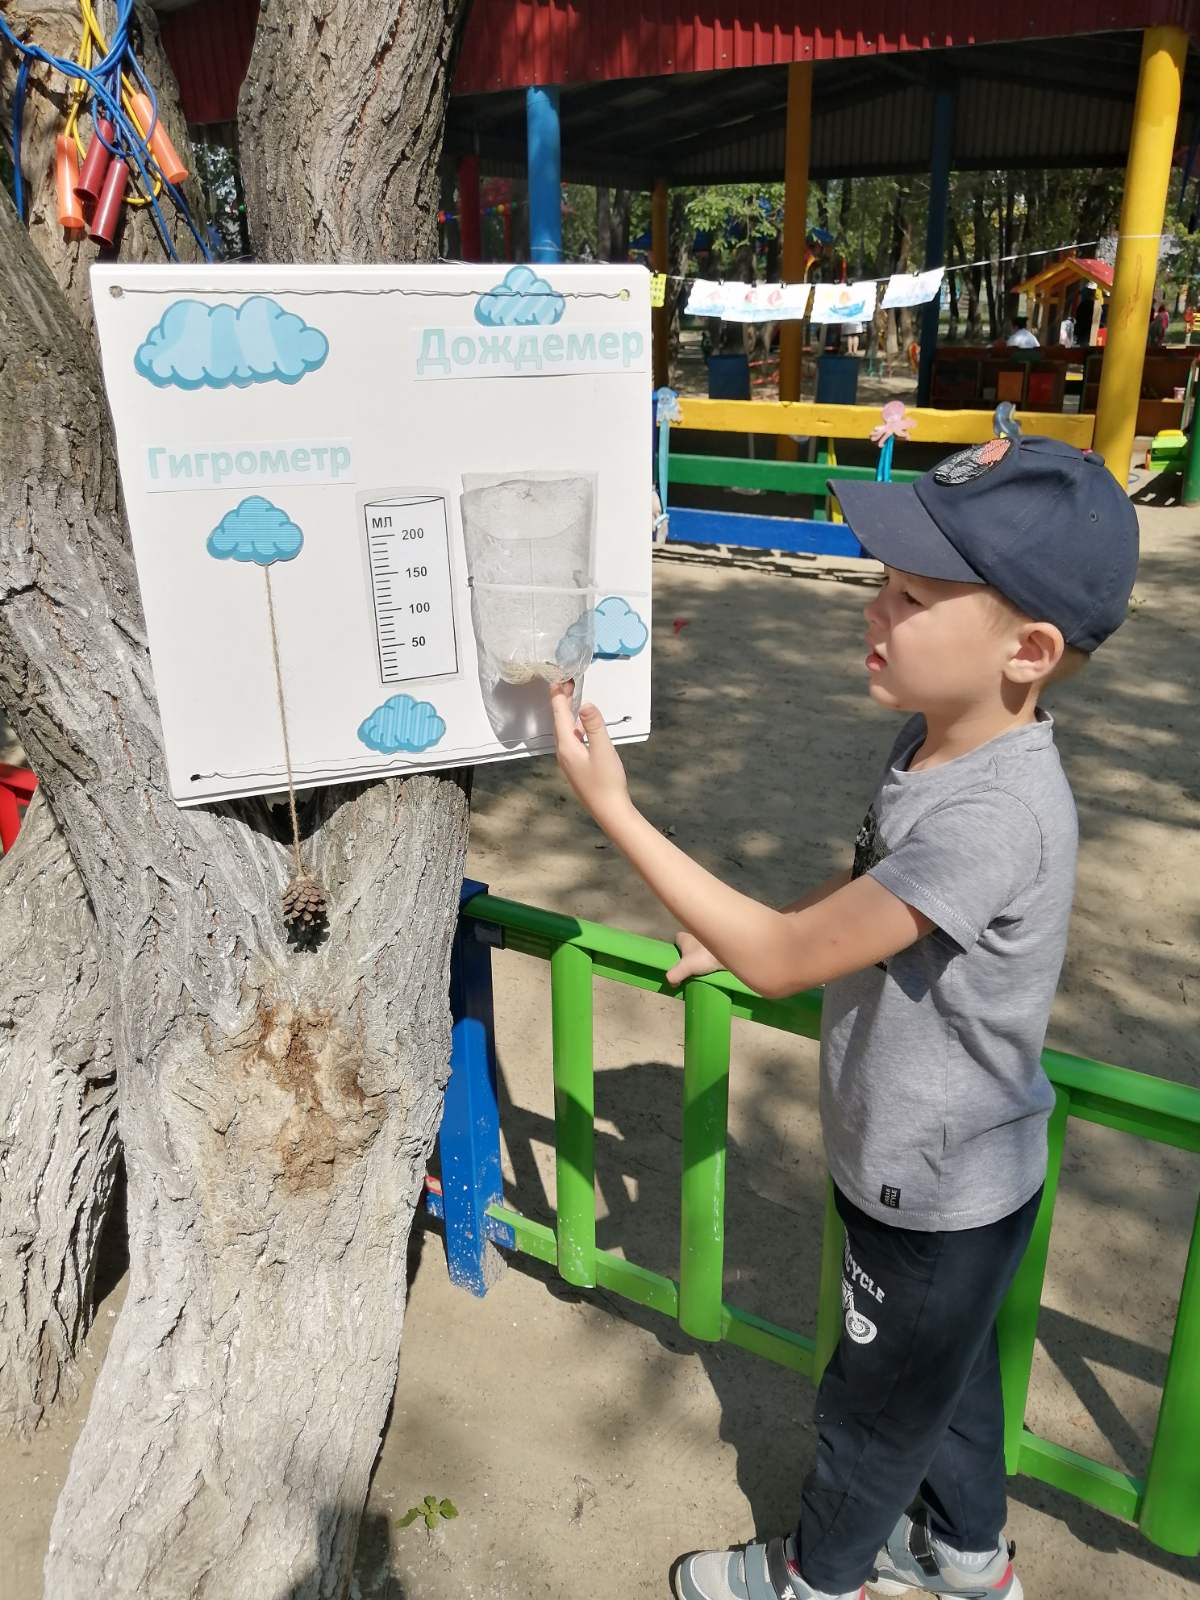 Дождемер своими руками в детском саду фото с описанием